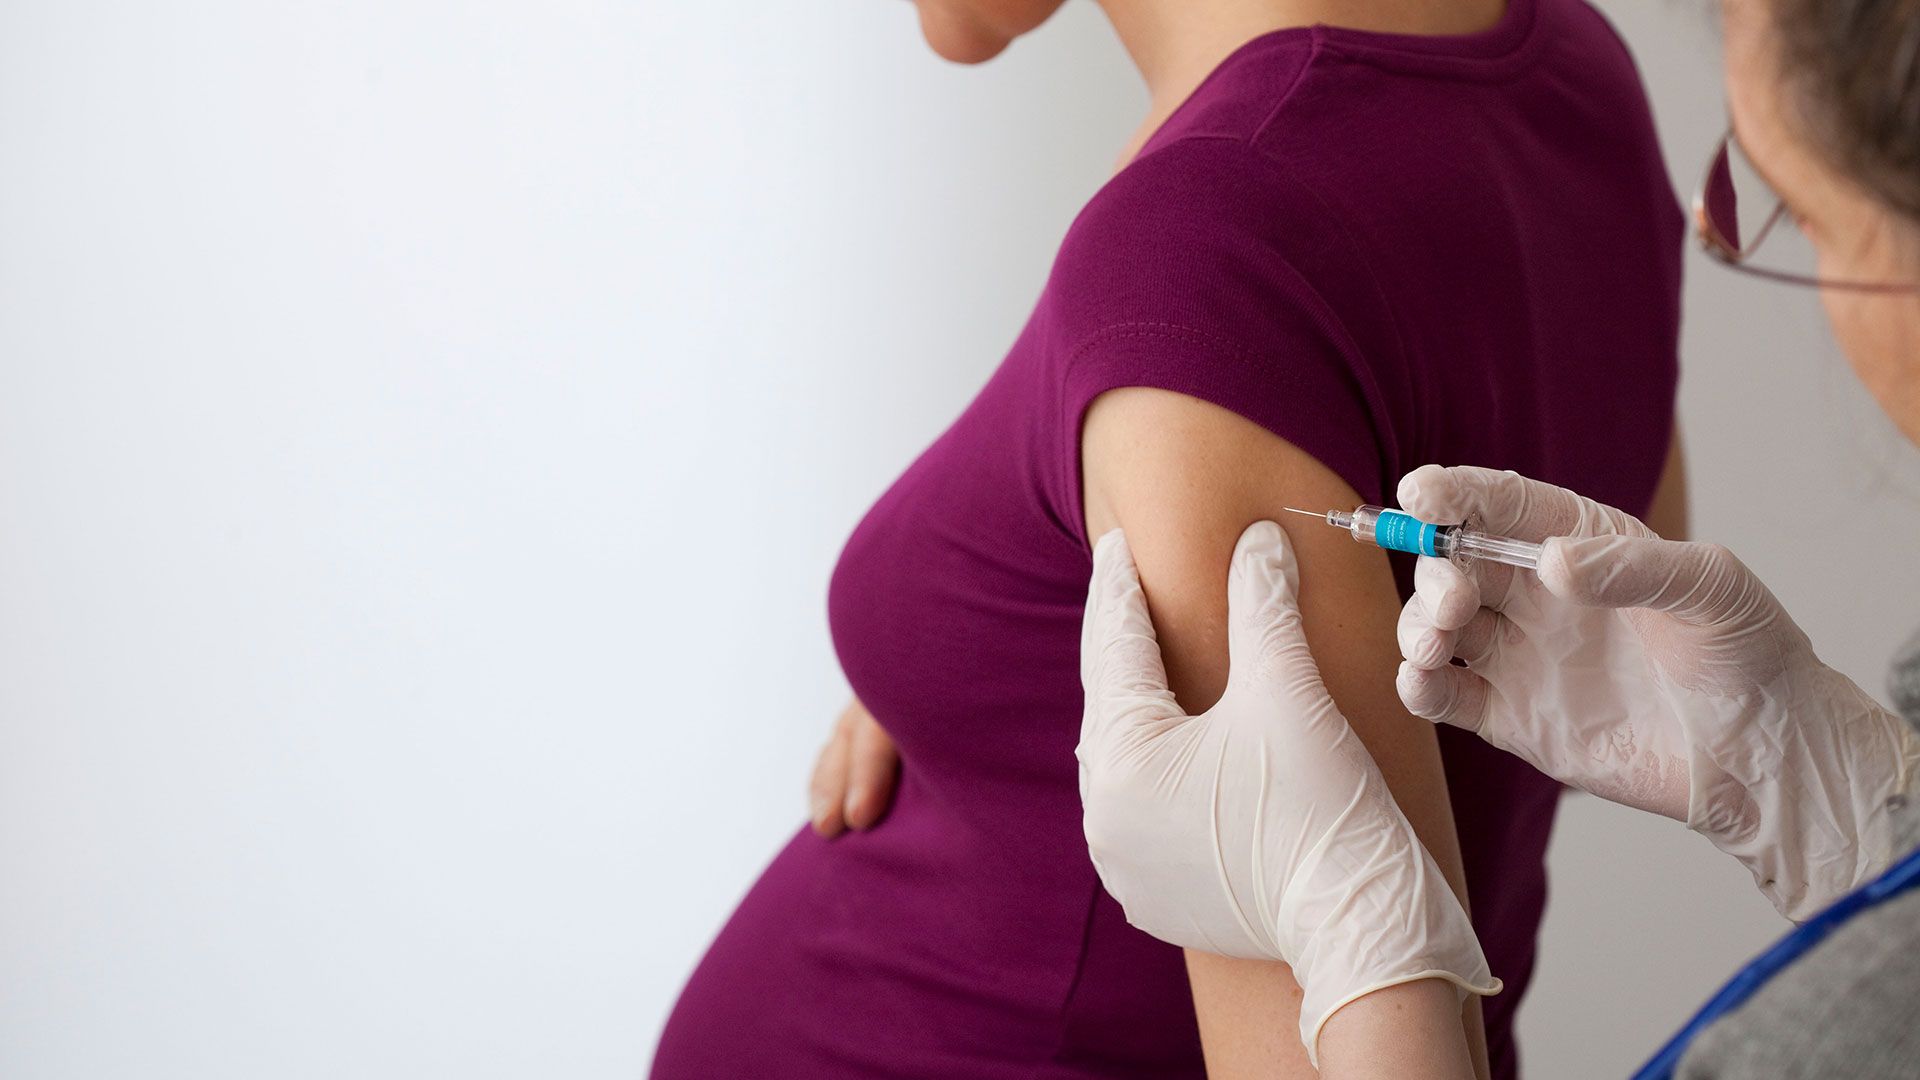 La recomendación de que se vacune a las embarazadas se dio luego de una protesta contra la postura anterior de la entidad (Shutterstock)